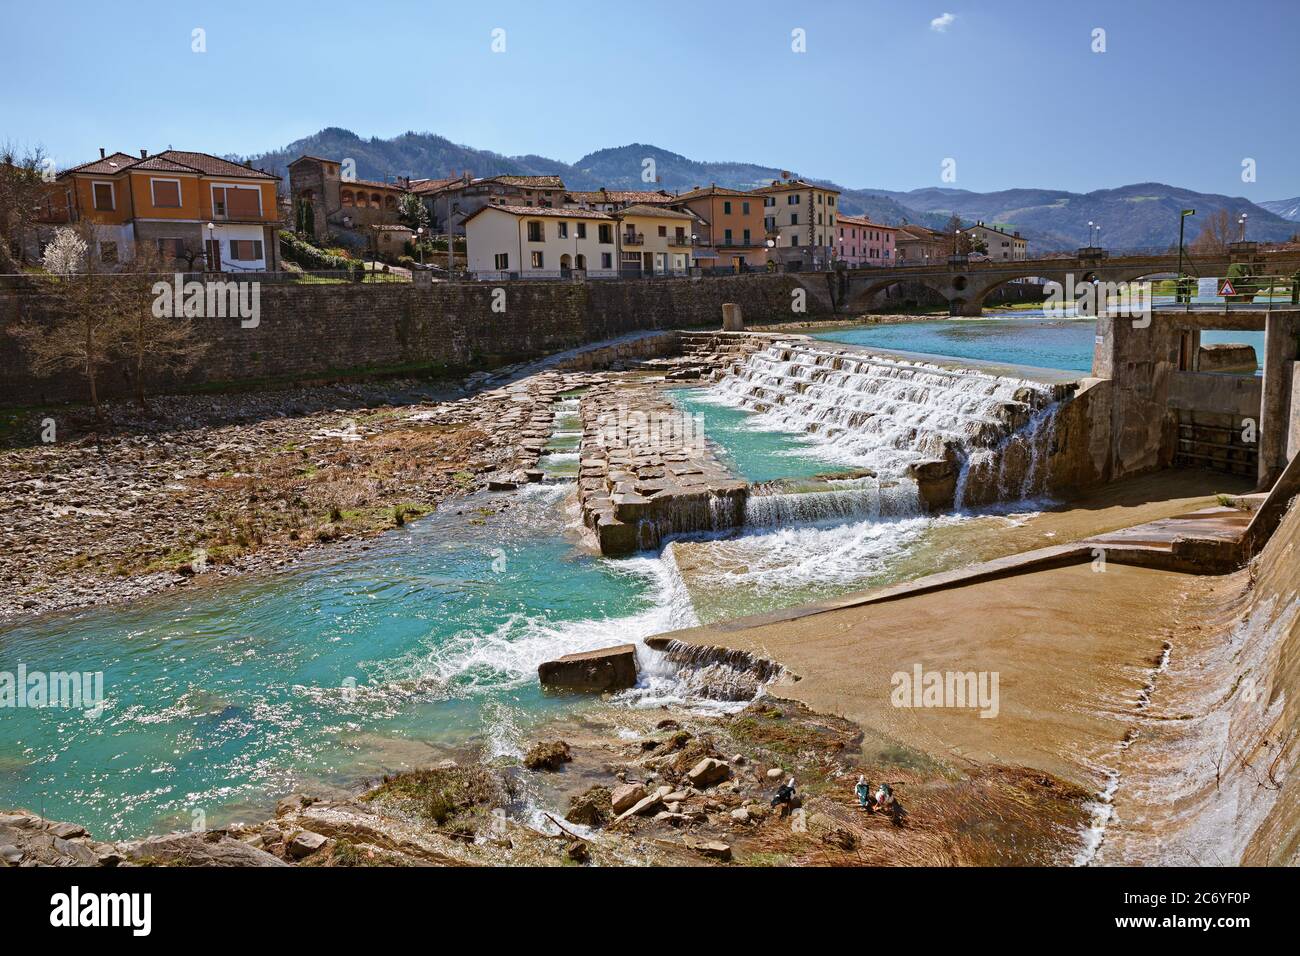 Santa Sofía, Forli Cesena, Emilia Romagna, Italia: Paisaje de la antigua ciudad atravesada por el río con las montañas Apeninos en el fondo Foto de stock